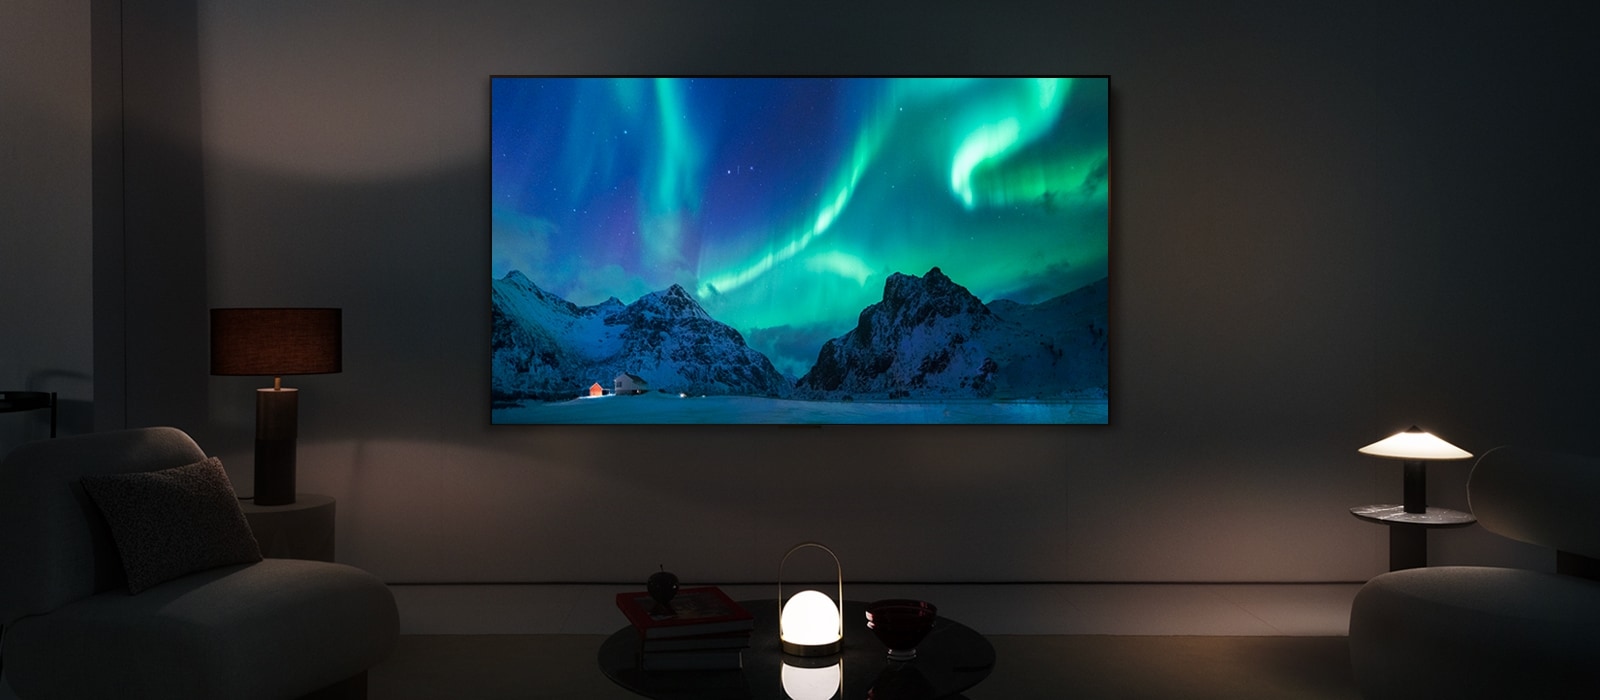 El televisor LG OLED y una barra de sonido LG en un espacio moderno durante la noche. La imagen de la aurora boreal se muestra con los niveles de brillo ideales.